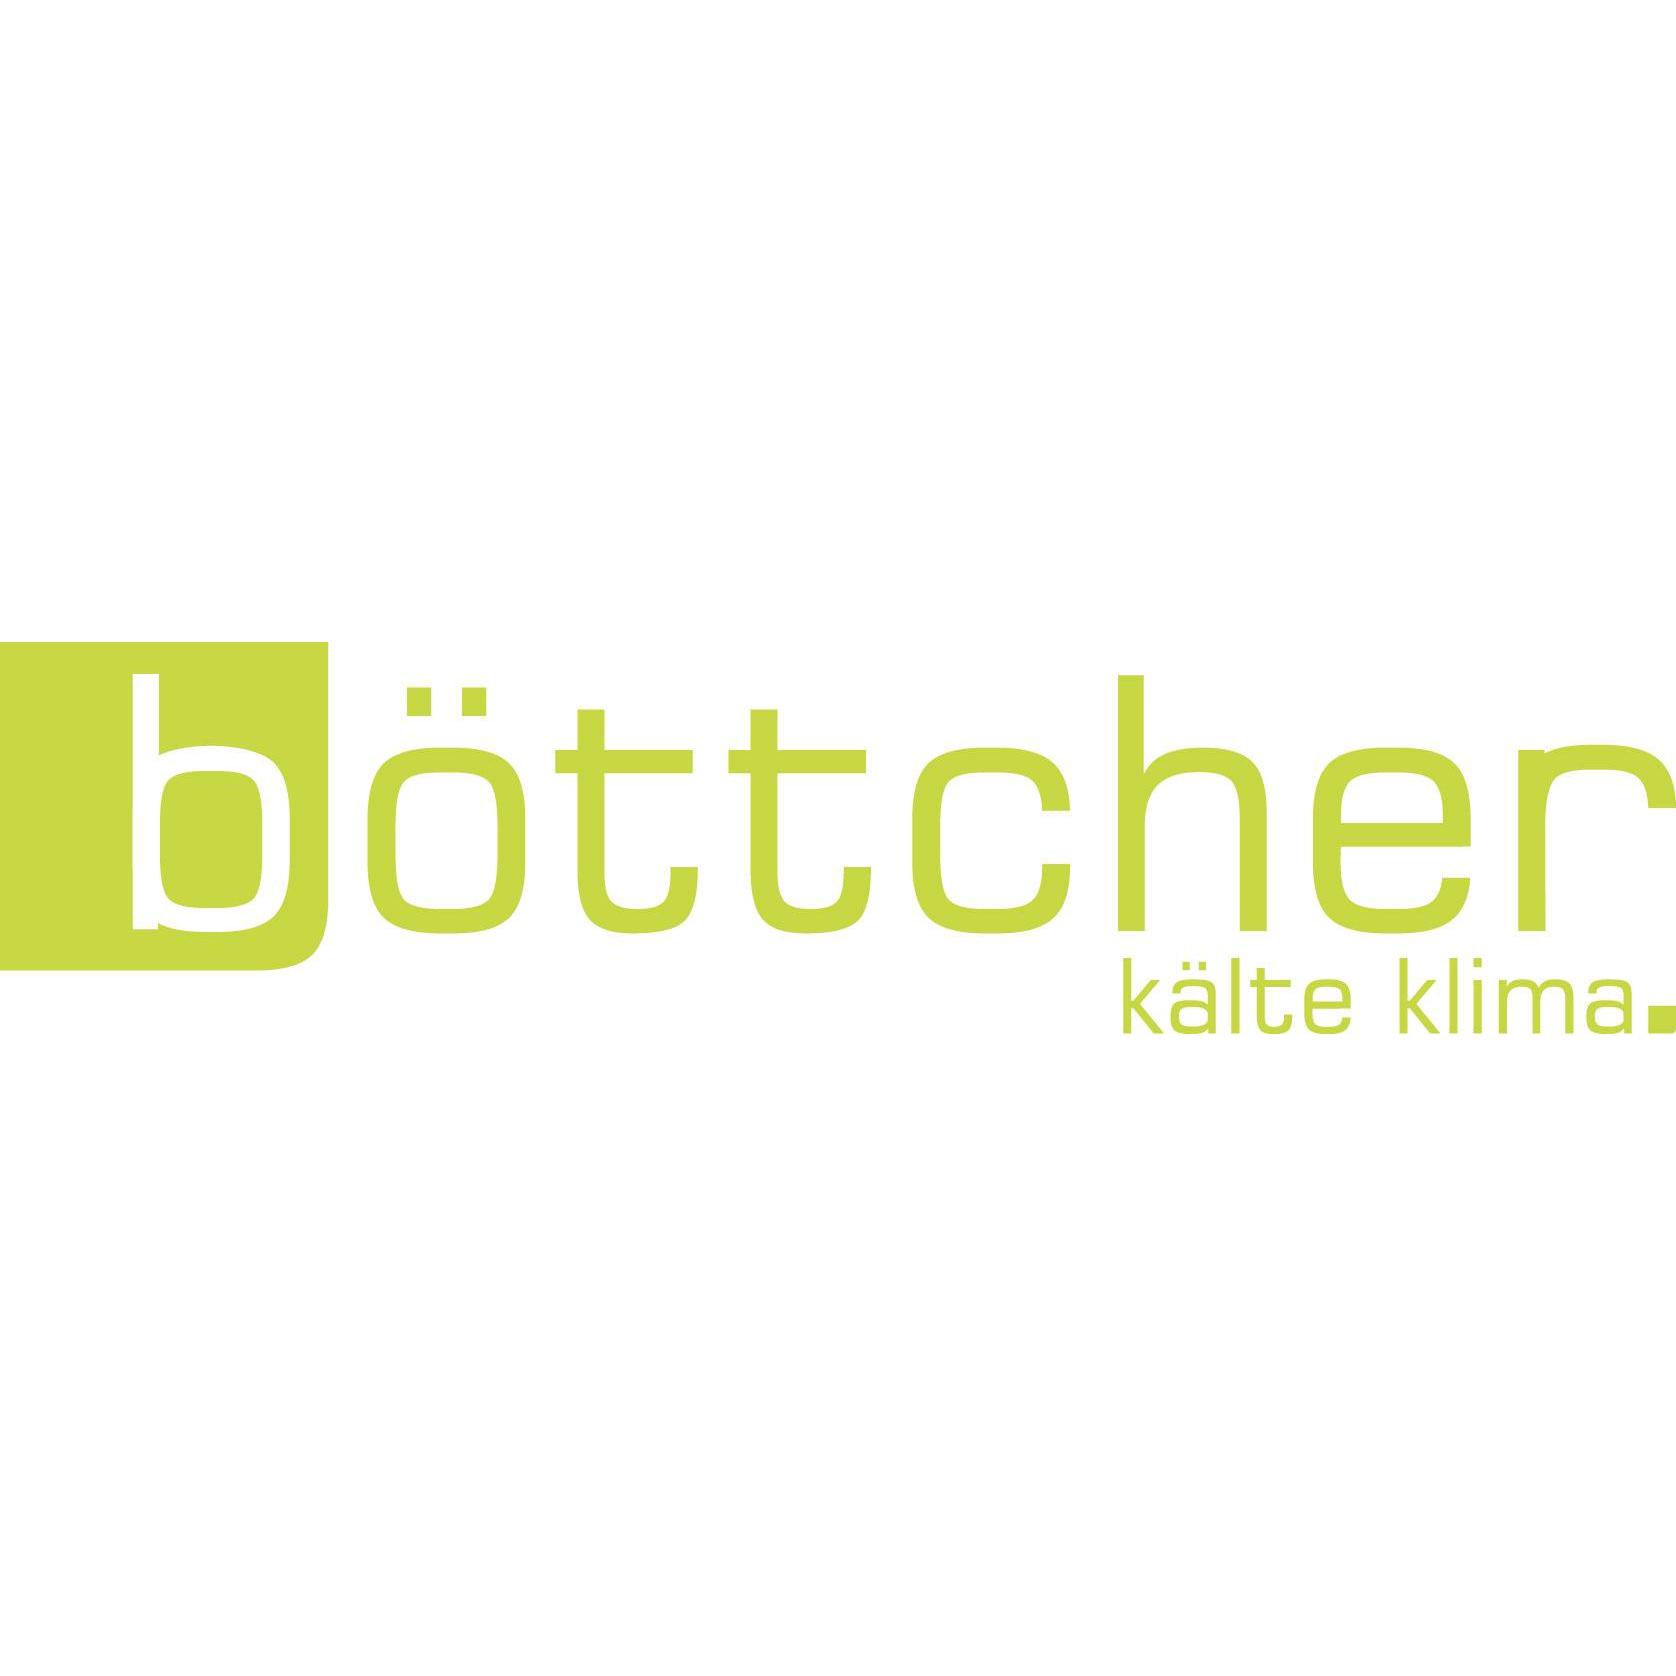 Böttcher Kälte Klima in Bad Nenndorf - Logo